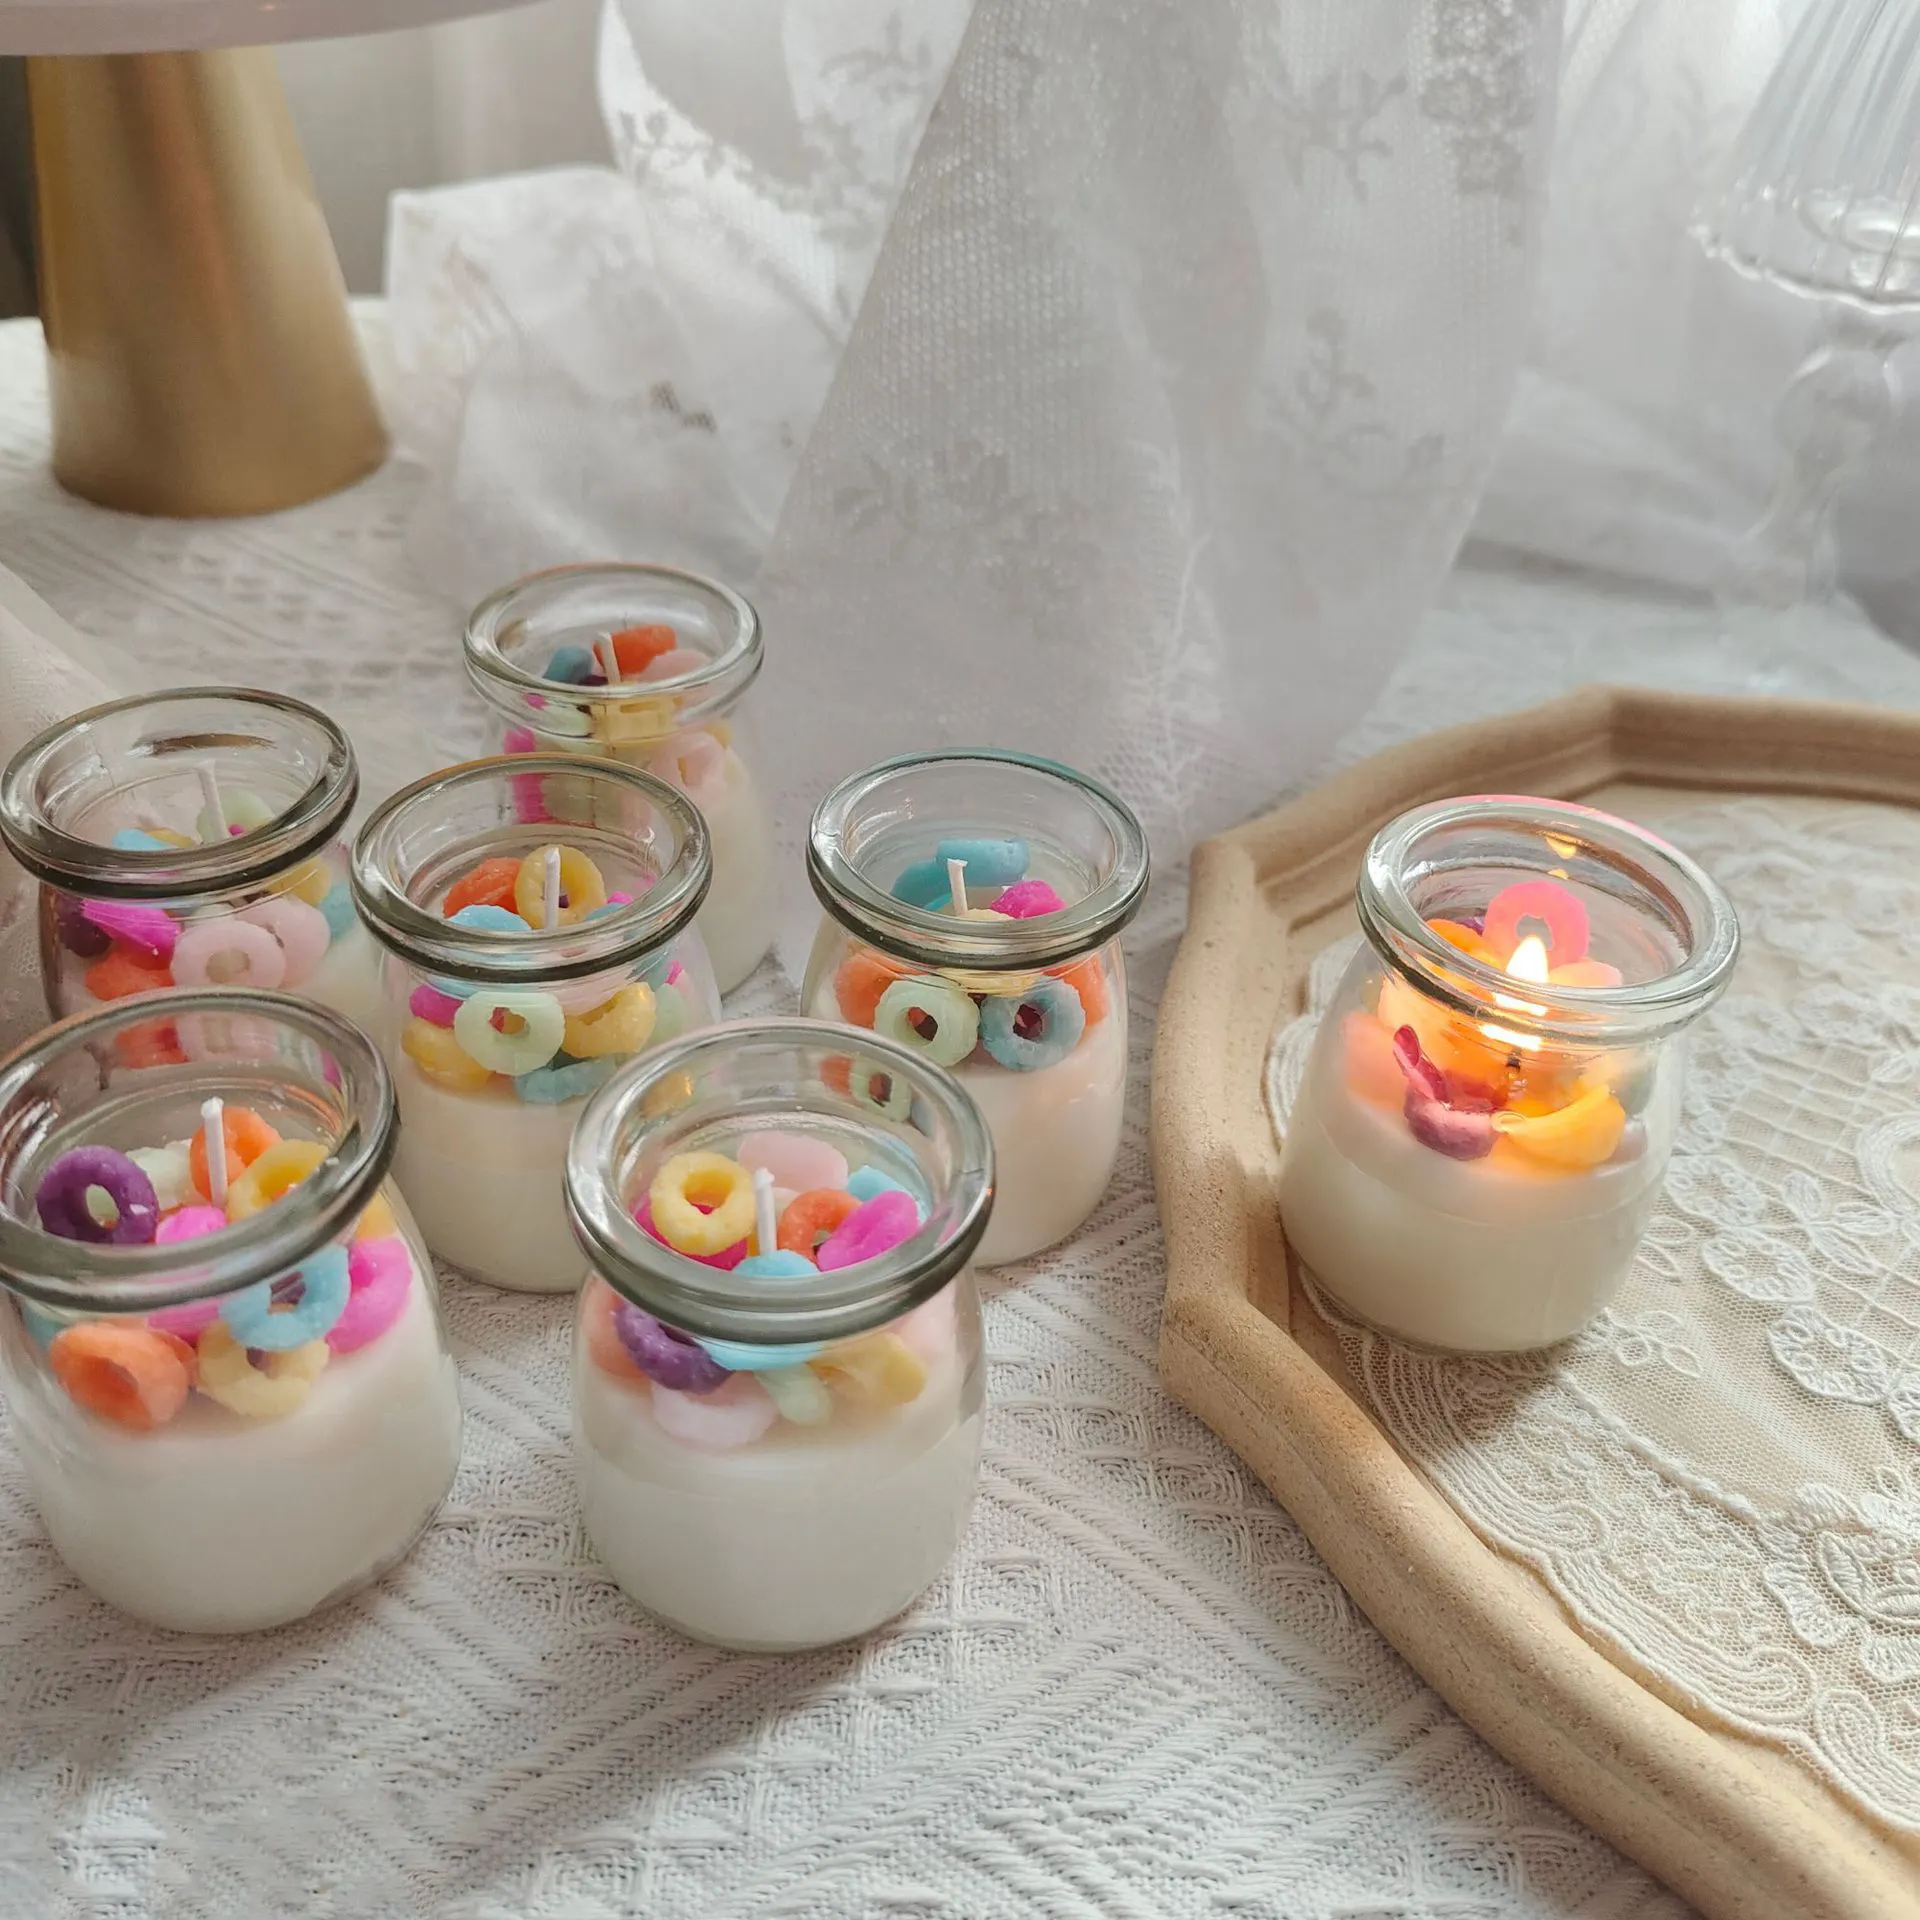 Niedliche Duft kerze mit Getreide Donut Form in Joghurt Pudding Flasche Süße Müsli Kerze in Glas Glas Tasse und Schüssel